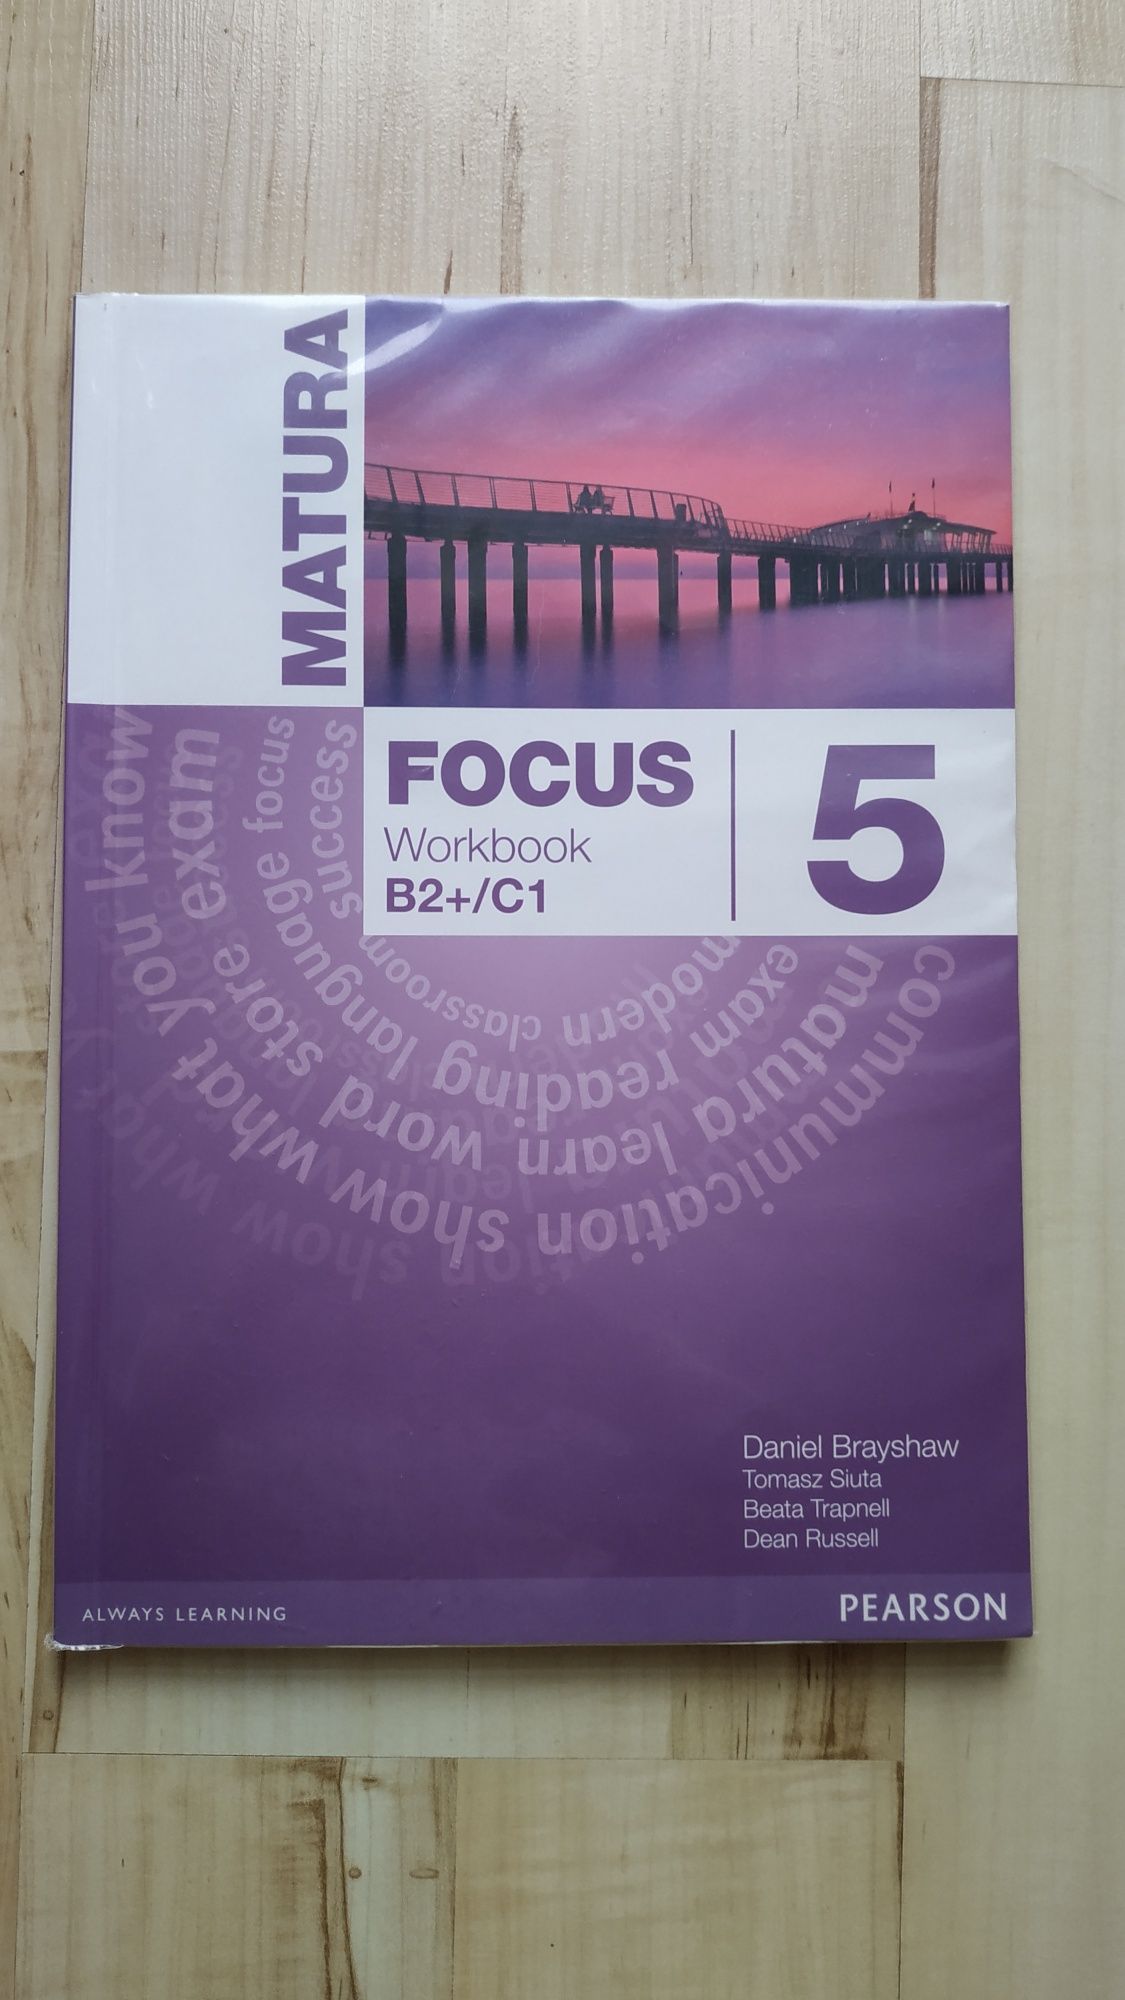 Matura Focus 5 workbook B2+/C1 ćwiczenia do angielskiego Pearson